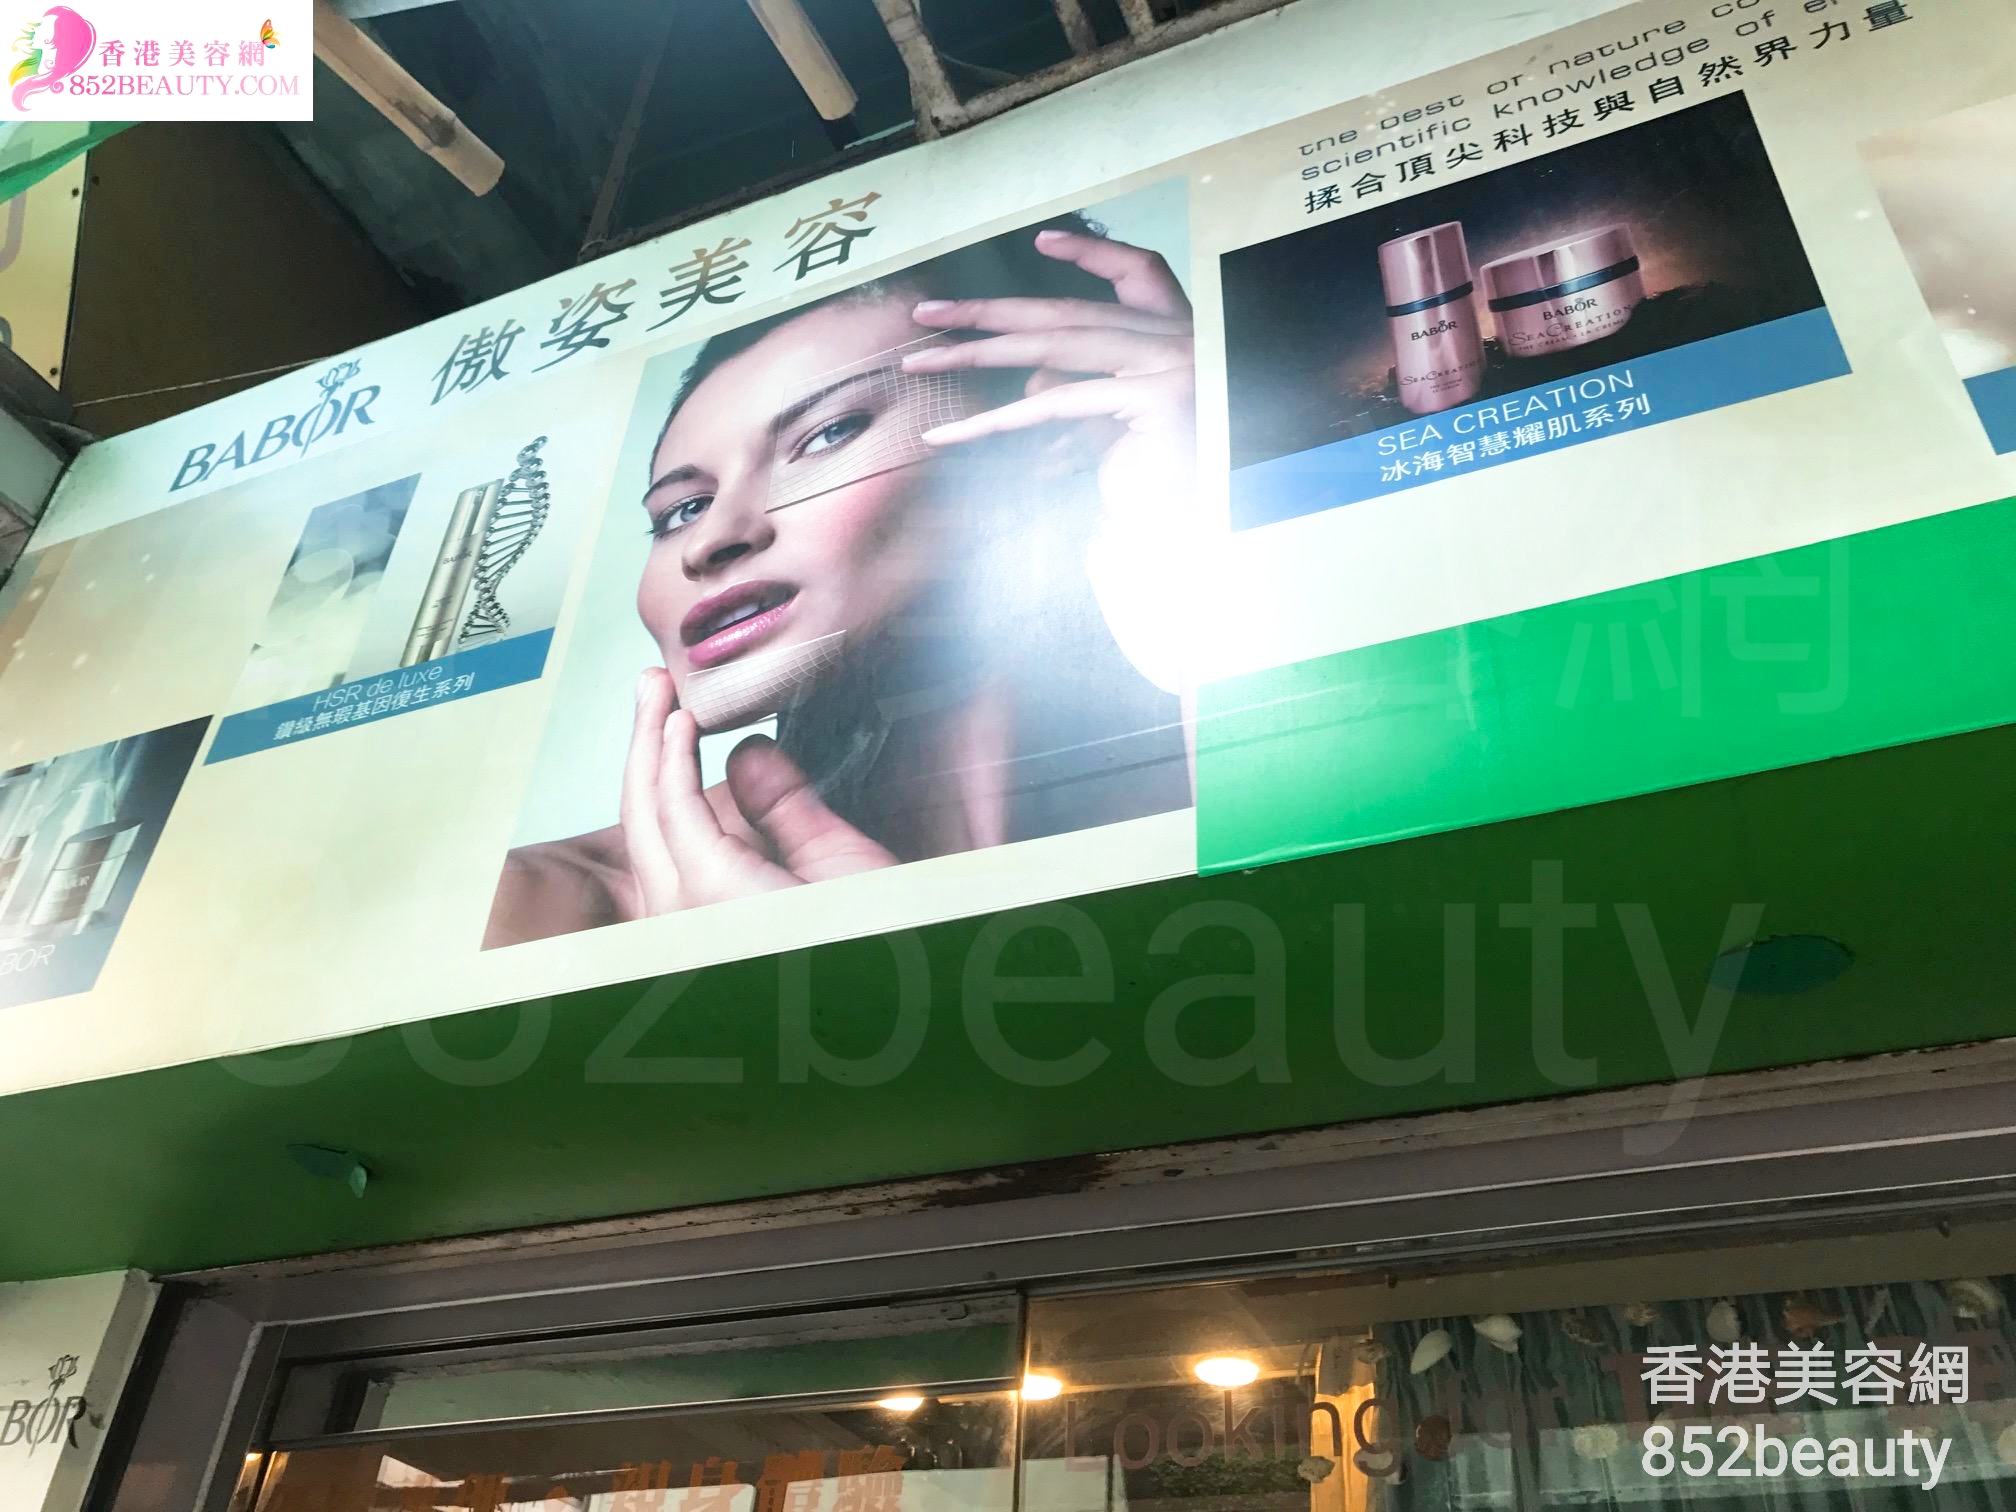 香港美容網 Hong Kong Beauty Salon 美容院 / 美容師: 傲姿美容